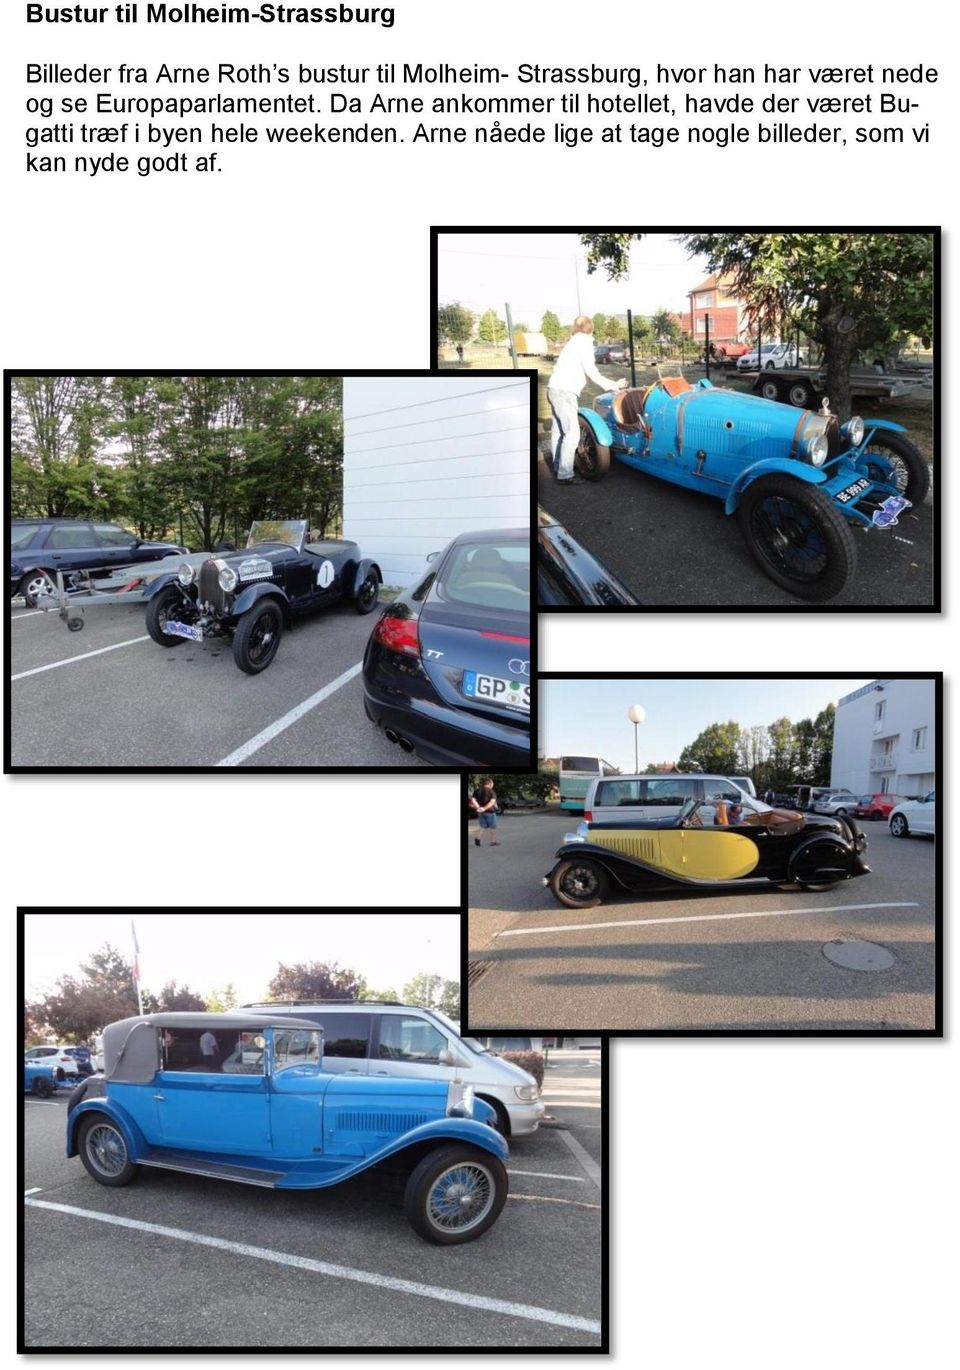 Da Arne ankommer til hotellet, havde der været Bugatti træf i byen